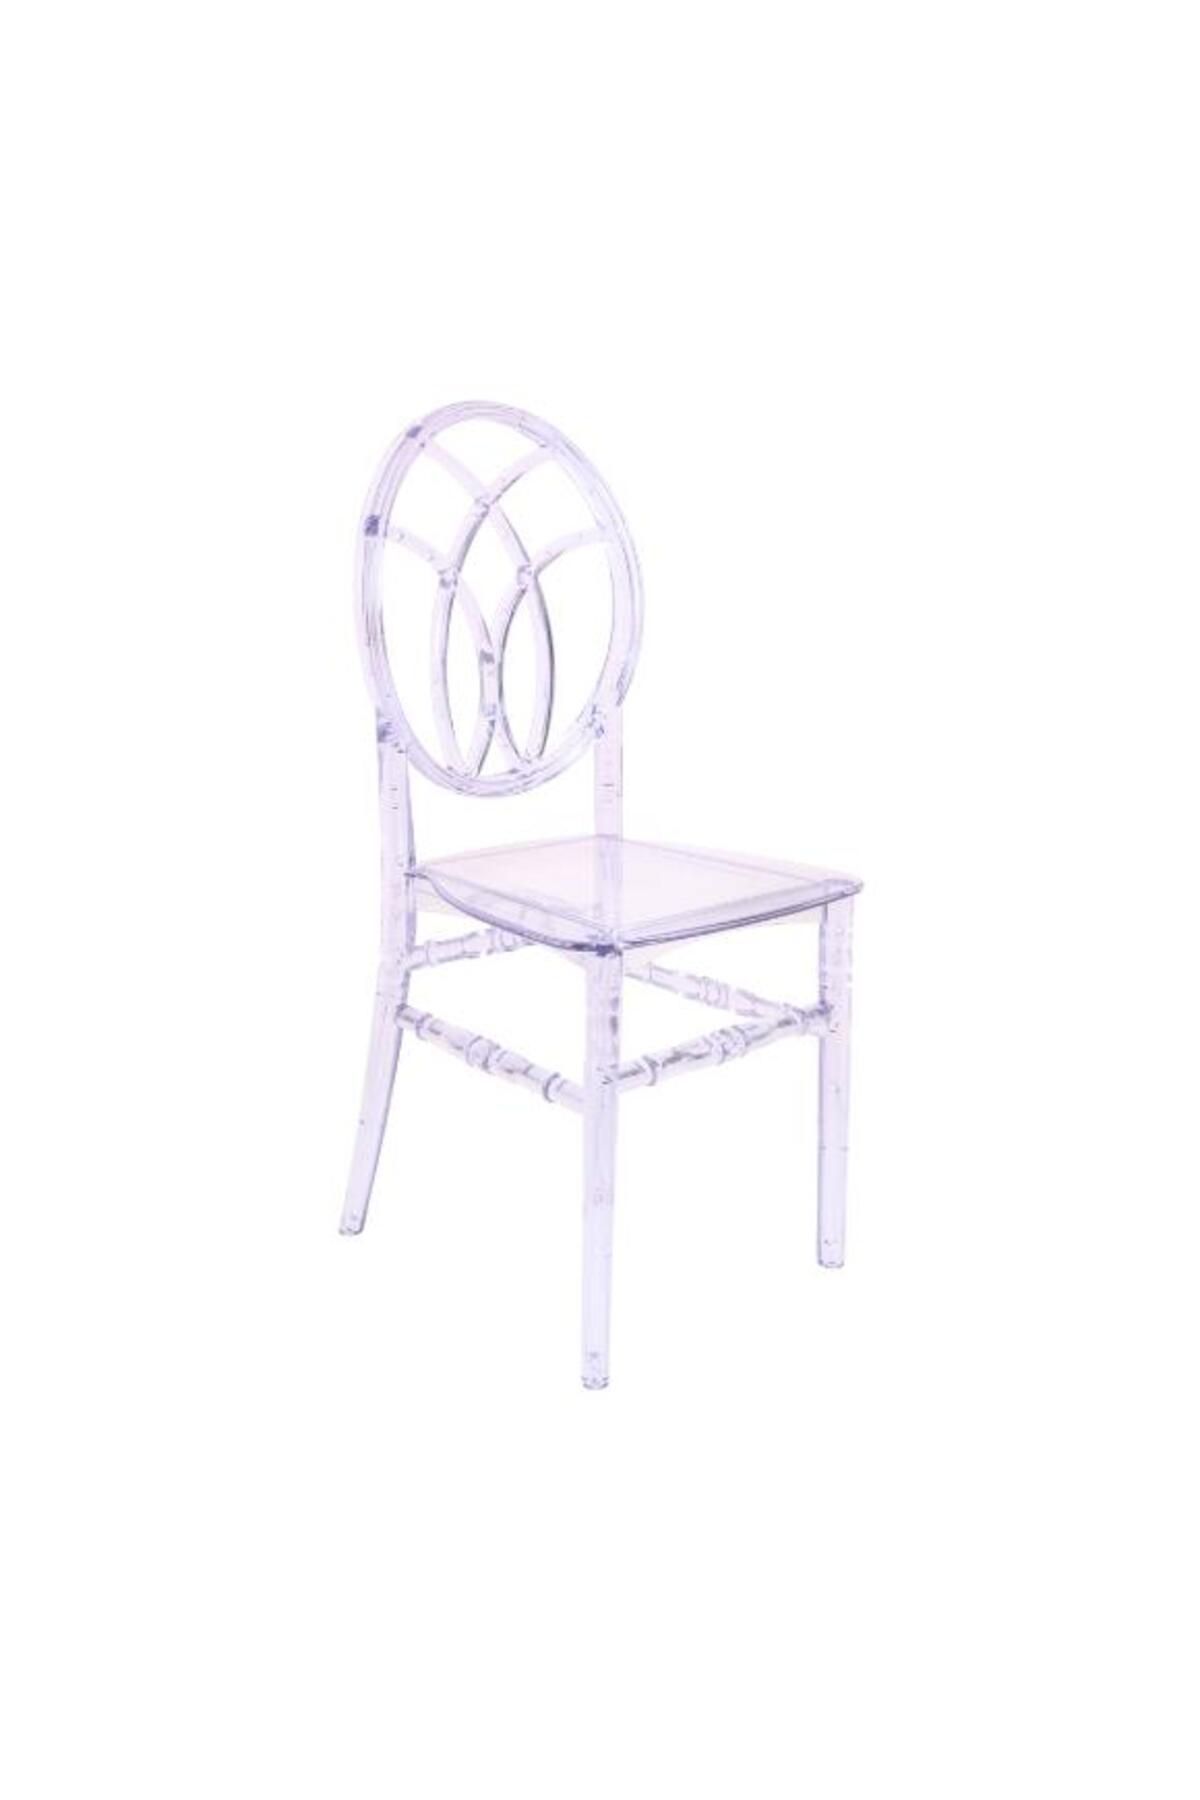 Mandella Karmen Şeffaf Kırılmaya Dayanıklı Sandalye Model 11 (4 Adet)